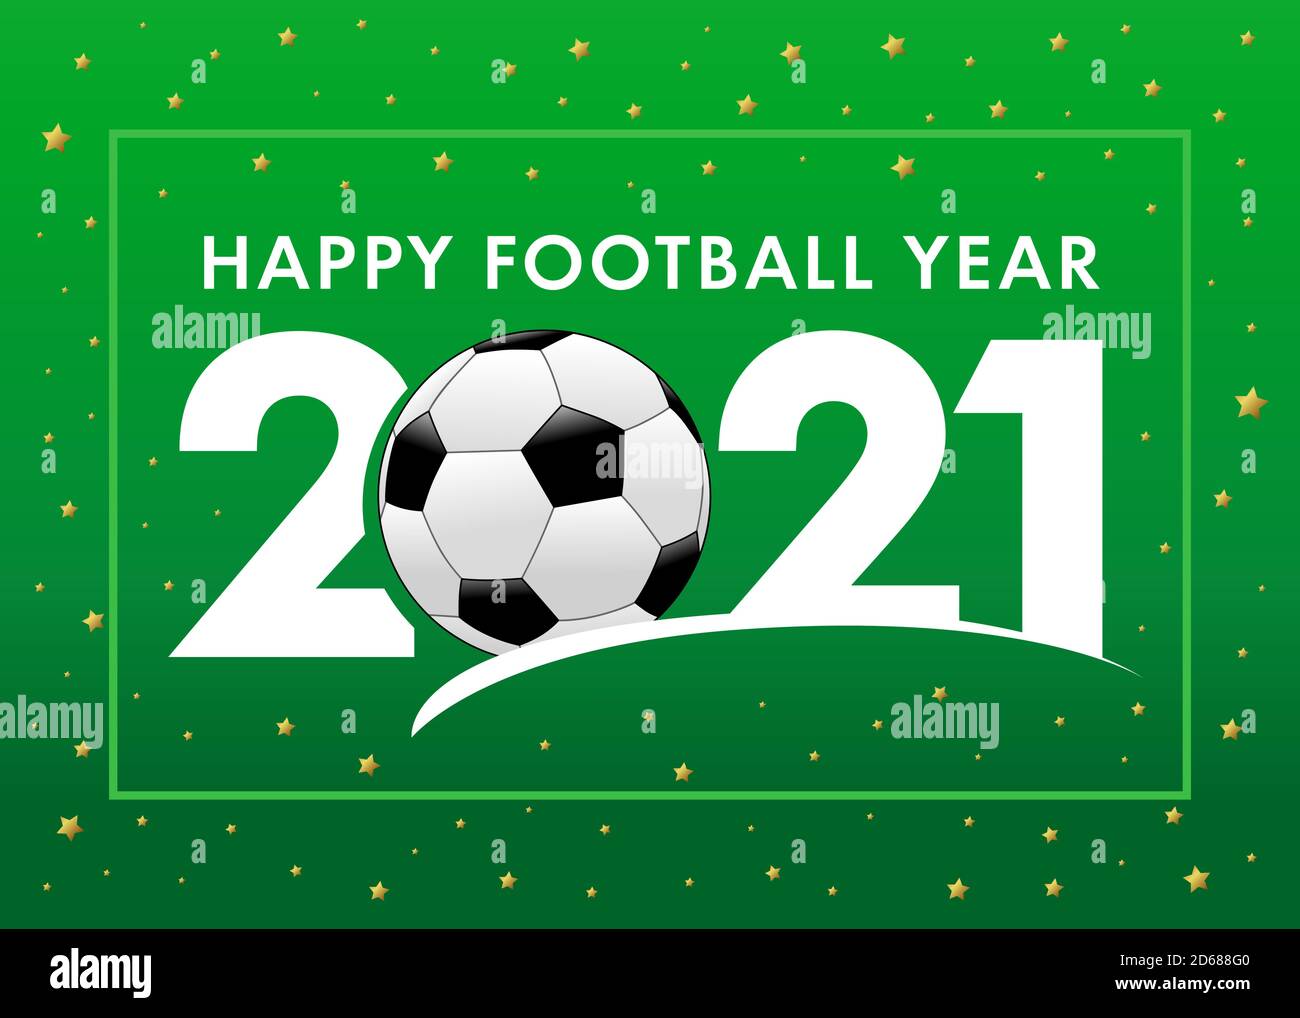 Bonne année du football 2021 avec texte et ballon de football sur fond vert. Illustration vectorielle Merry Christmas avec 2, boule et 21 chiffres, carte d'invitation Illustration de Vecteur